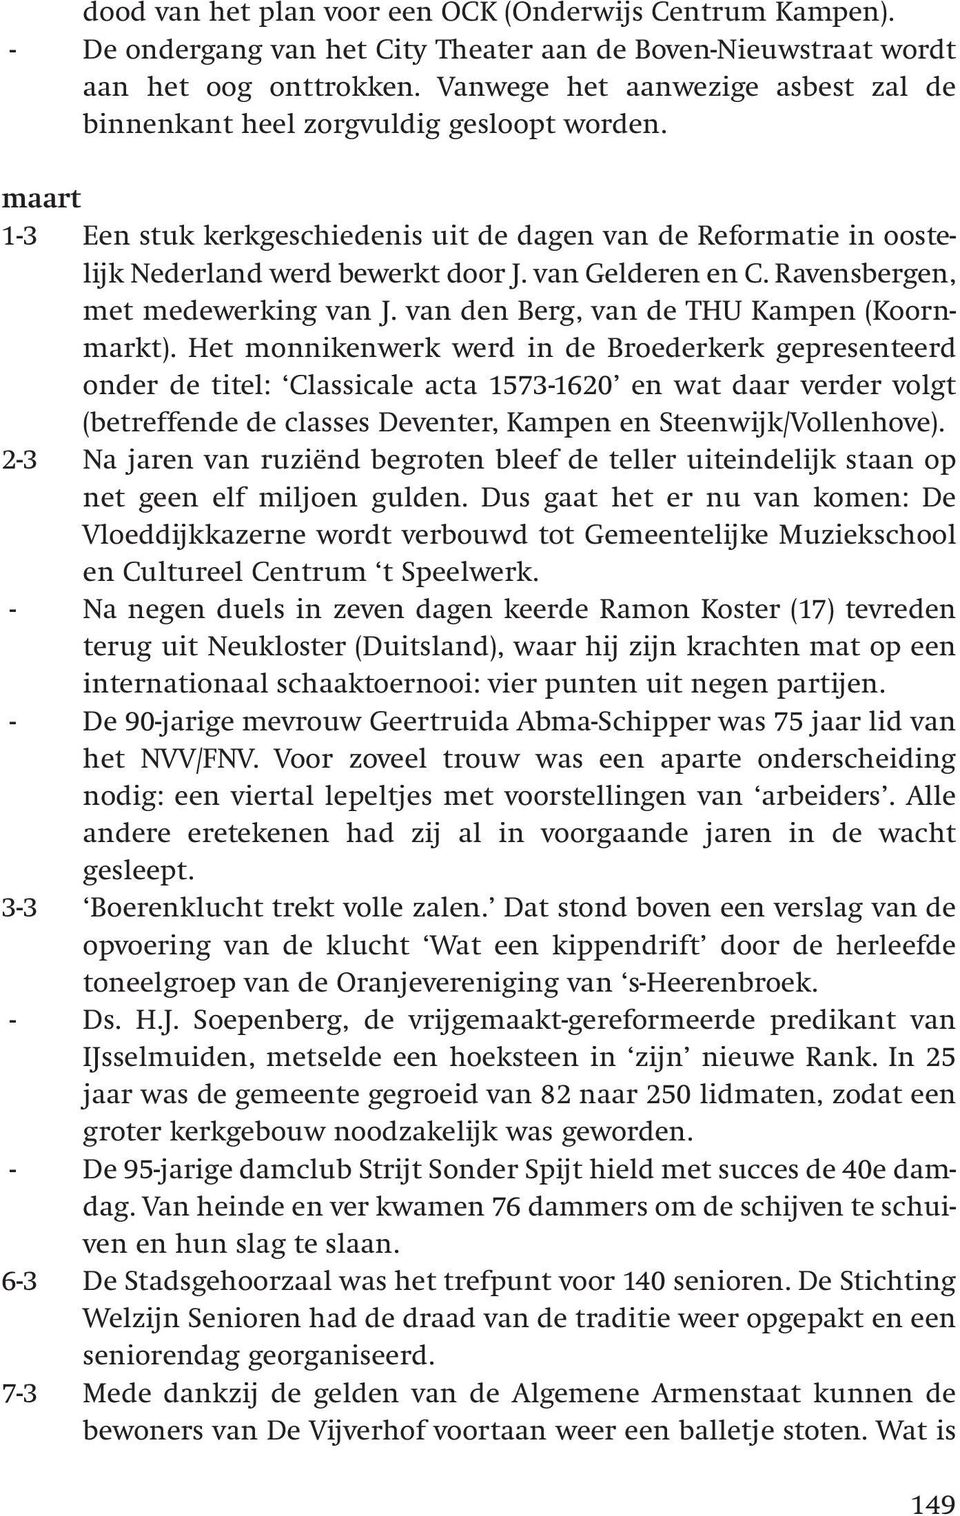 van Gelderen en C. Ravensbergen, met medewerking van J. van den Berg, van de THU Kampen (Koornmarkt).